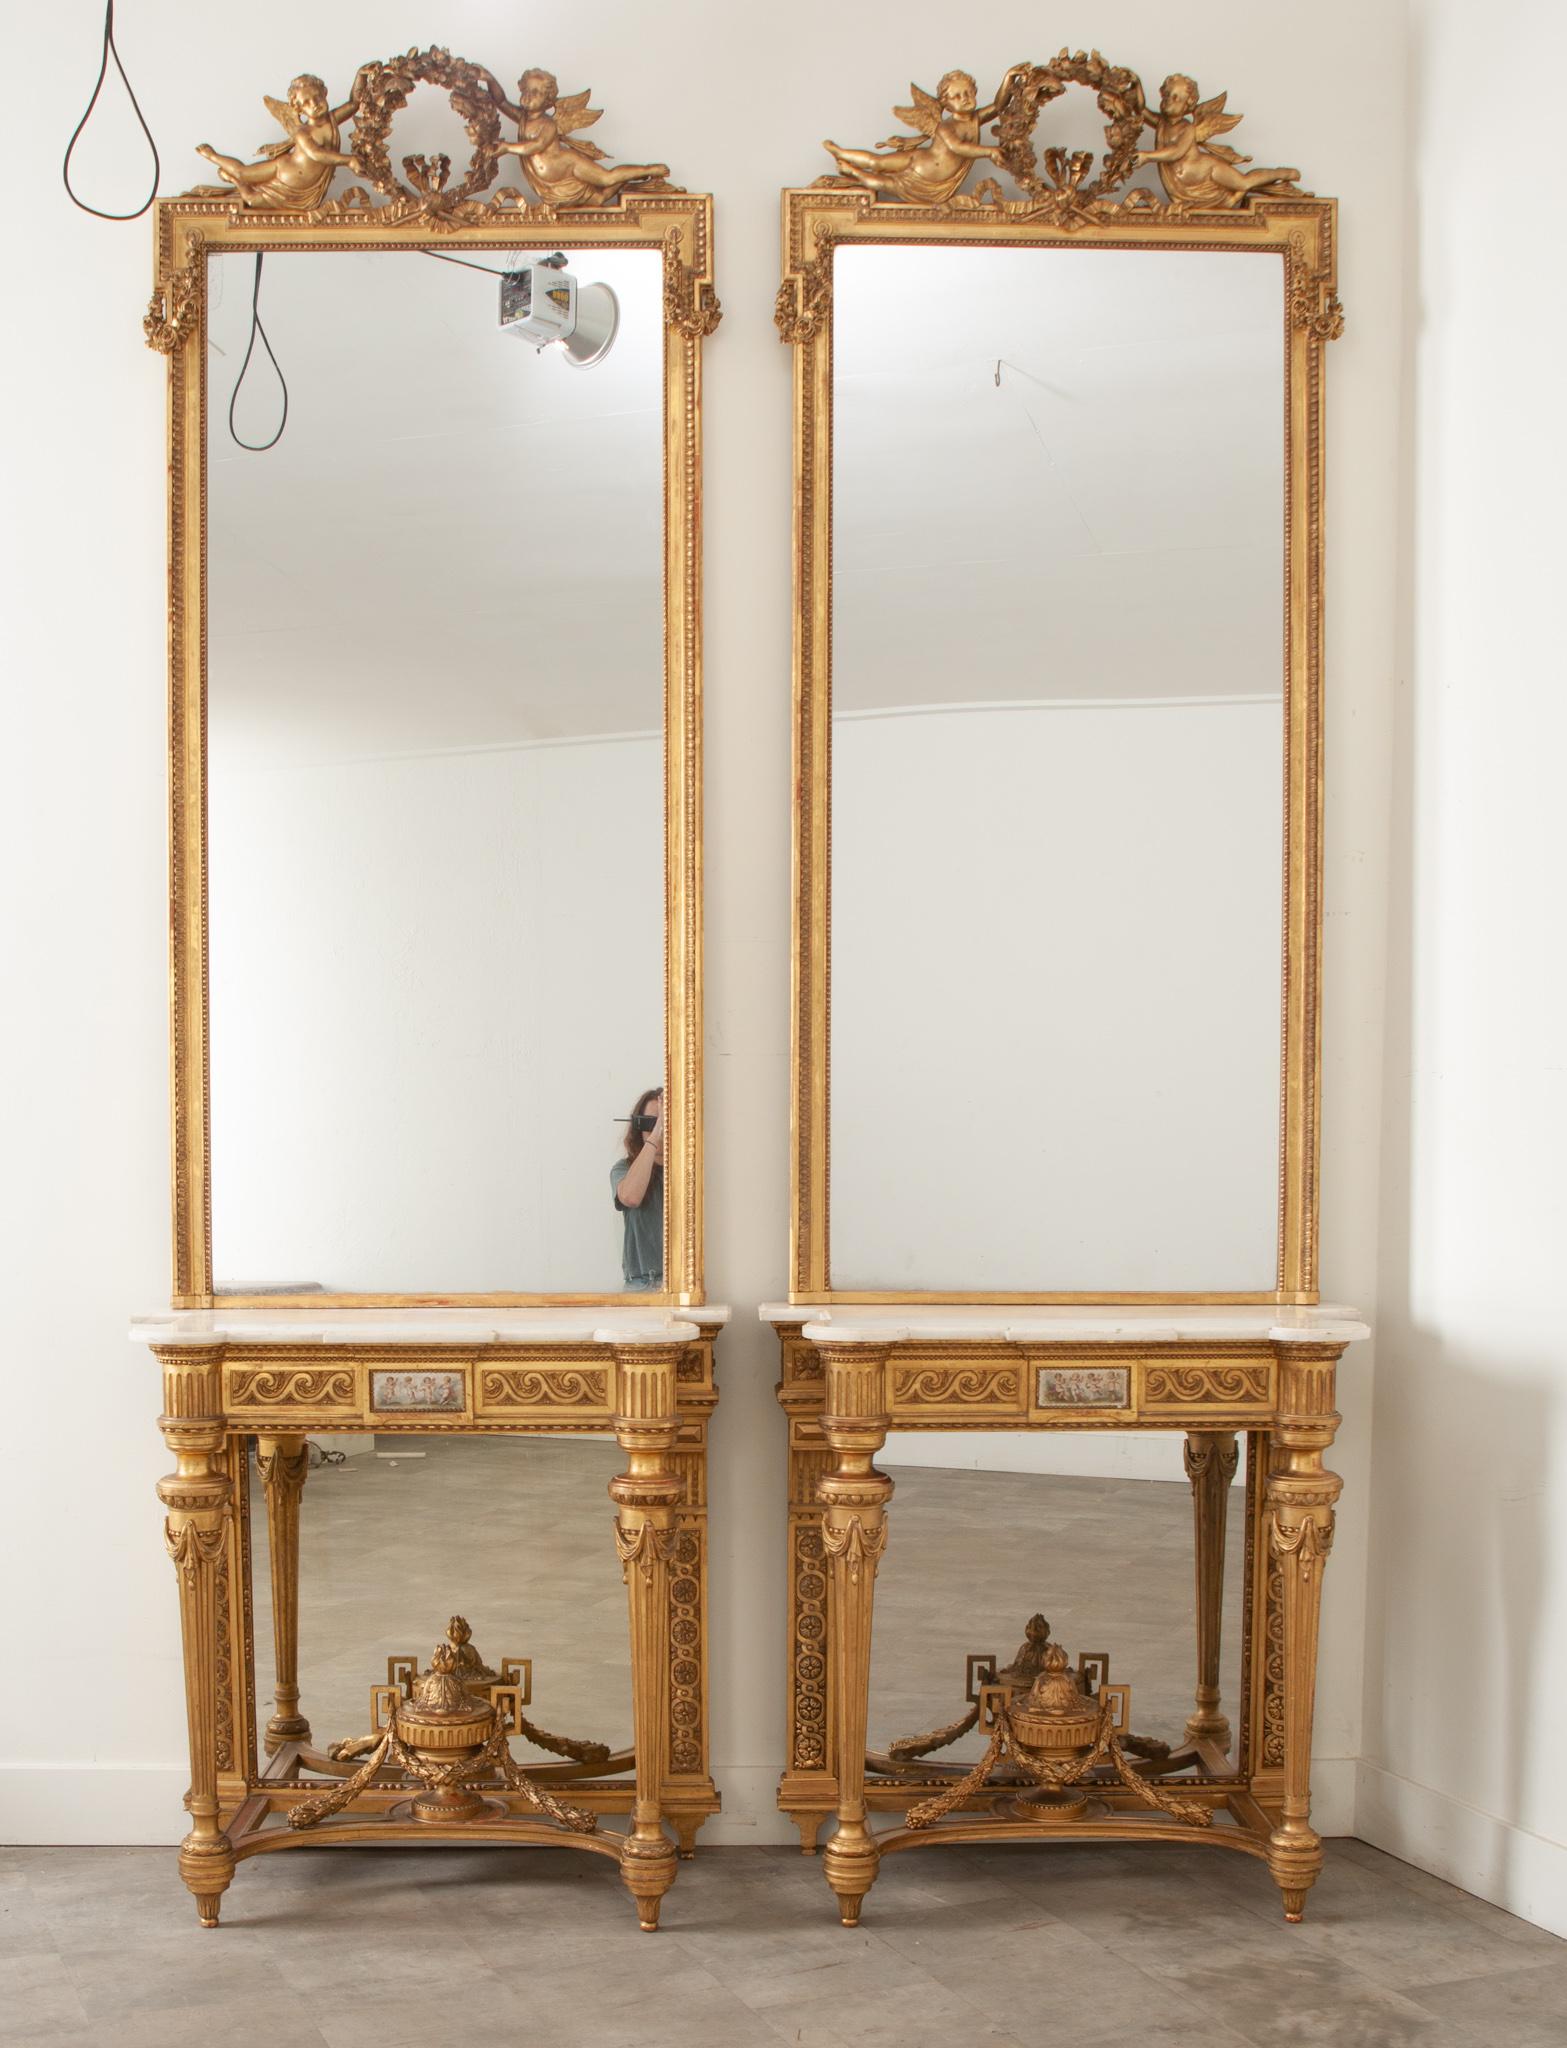 Une paire impressionnante et de qualité de consoles en bois doré Napoléon III et de miroirs assortis. Les miroirs de la console, dorés à l'or fin, ont tous deux leur plaque de miroir d'origine, avec des rousseurs minimes et une légère couche de